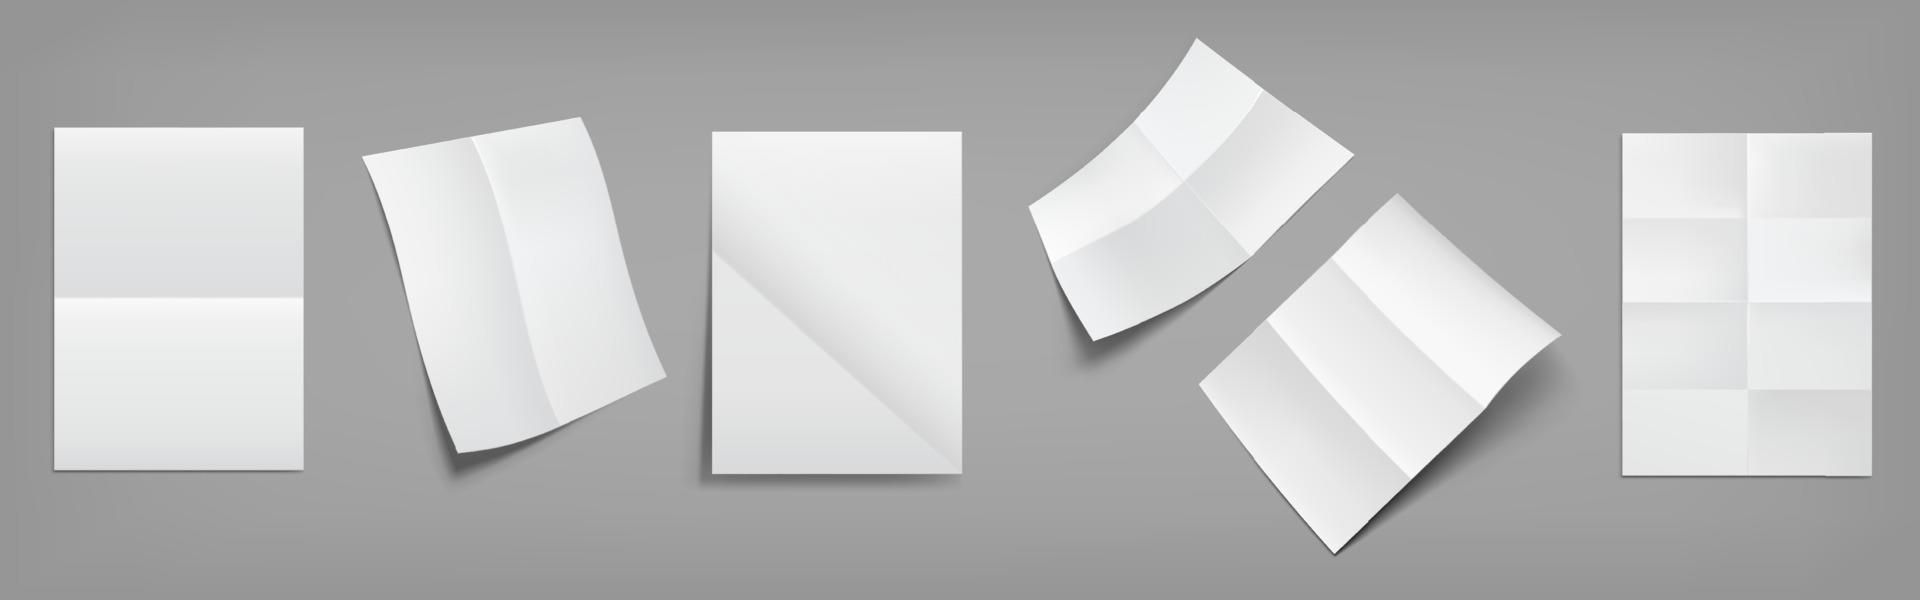 cartazes brancos dobrados, folhas de papel em branco vetor